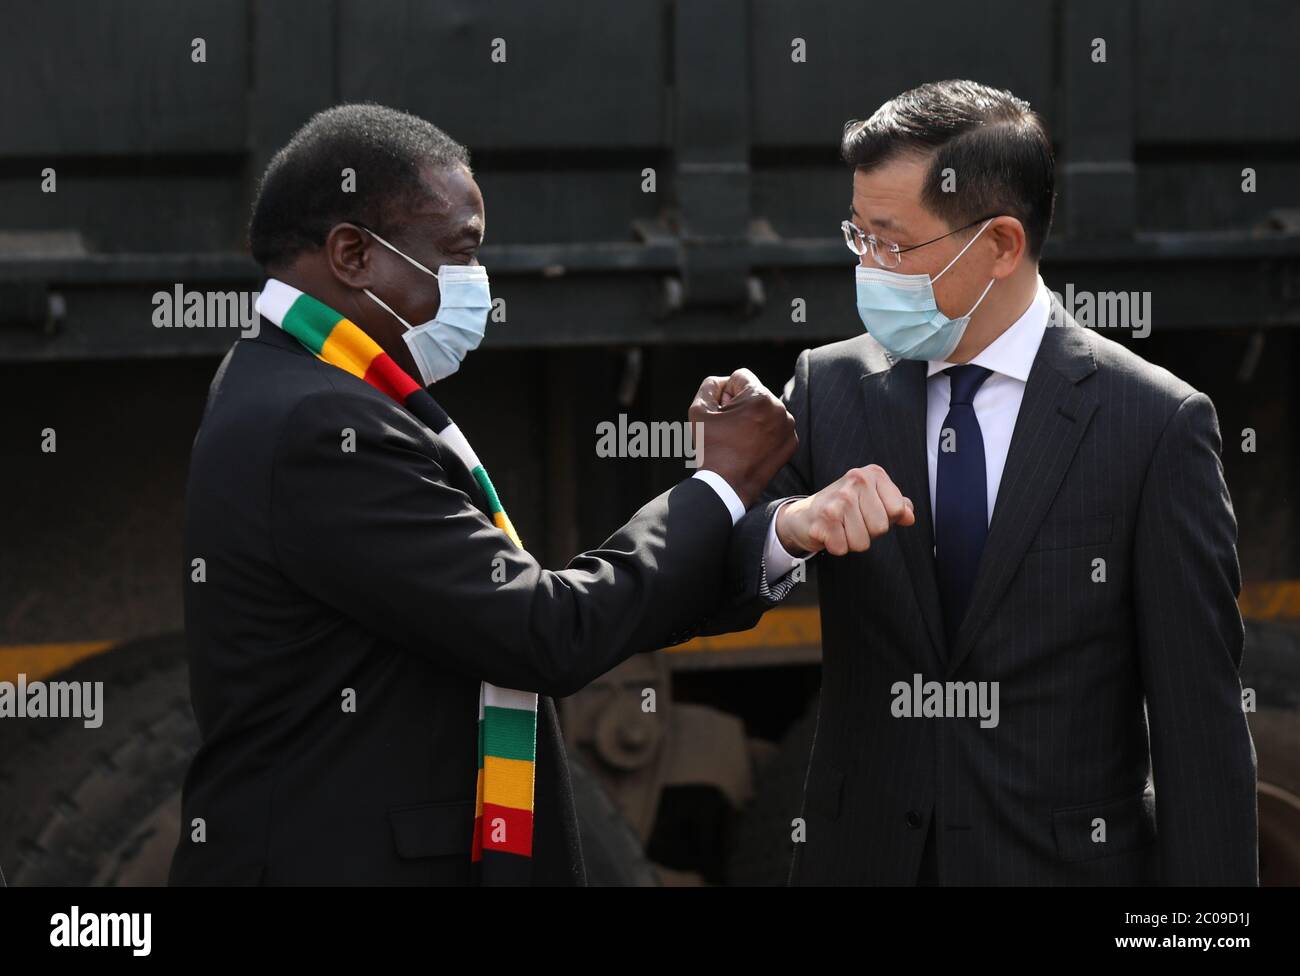 Harare, Zimbabwe. 11 de junio de 2020. El Presidente de Zimbabwe Emmerson Mnangagwa (L) y el embajador chino en Zimbabwe Guo Shaochun se saludan mutuamente en una ceremonia de entrega de suministros médicos contra el COVID-19 en Harare, Zimbabwe, el 11 de junio de 2020. El gobierno chino donó el jueves un segundo lote de suministros médicos anti-COVID-19 a Zimbabwe en medio de un aumento en el número de casos en el país del sur de África en las últimas semanas. Crédito: Shaun Jusa/Xinhua/Alamy Live News Foto de stock